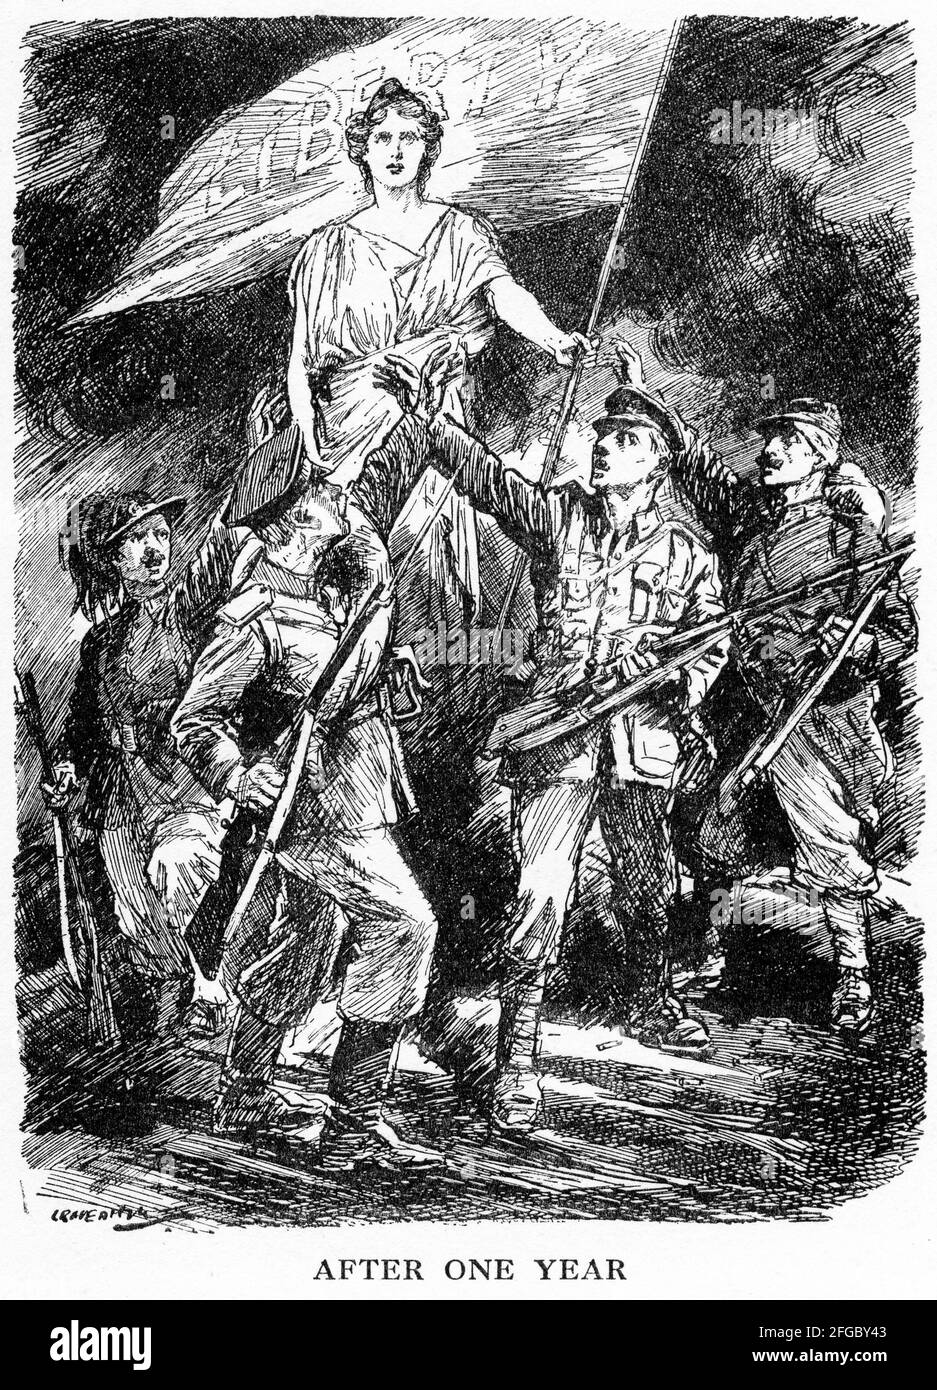 Gravur zur Steigerung der britischen Moral nach einem Jahr des Kampfes gegen den Ersten Weltkrieg. Aus dem Magazin Punch. Stockfoto